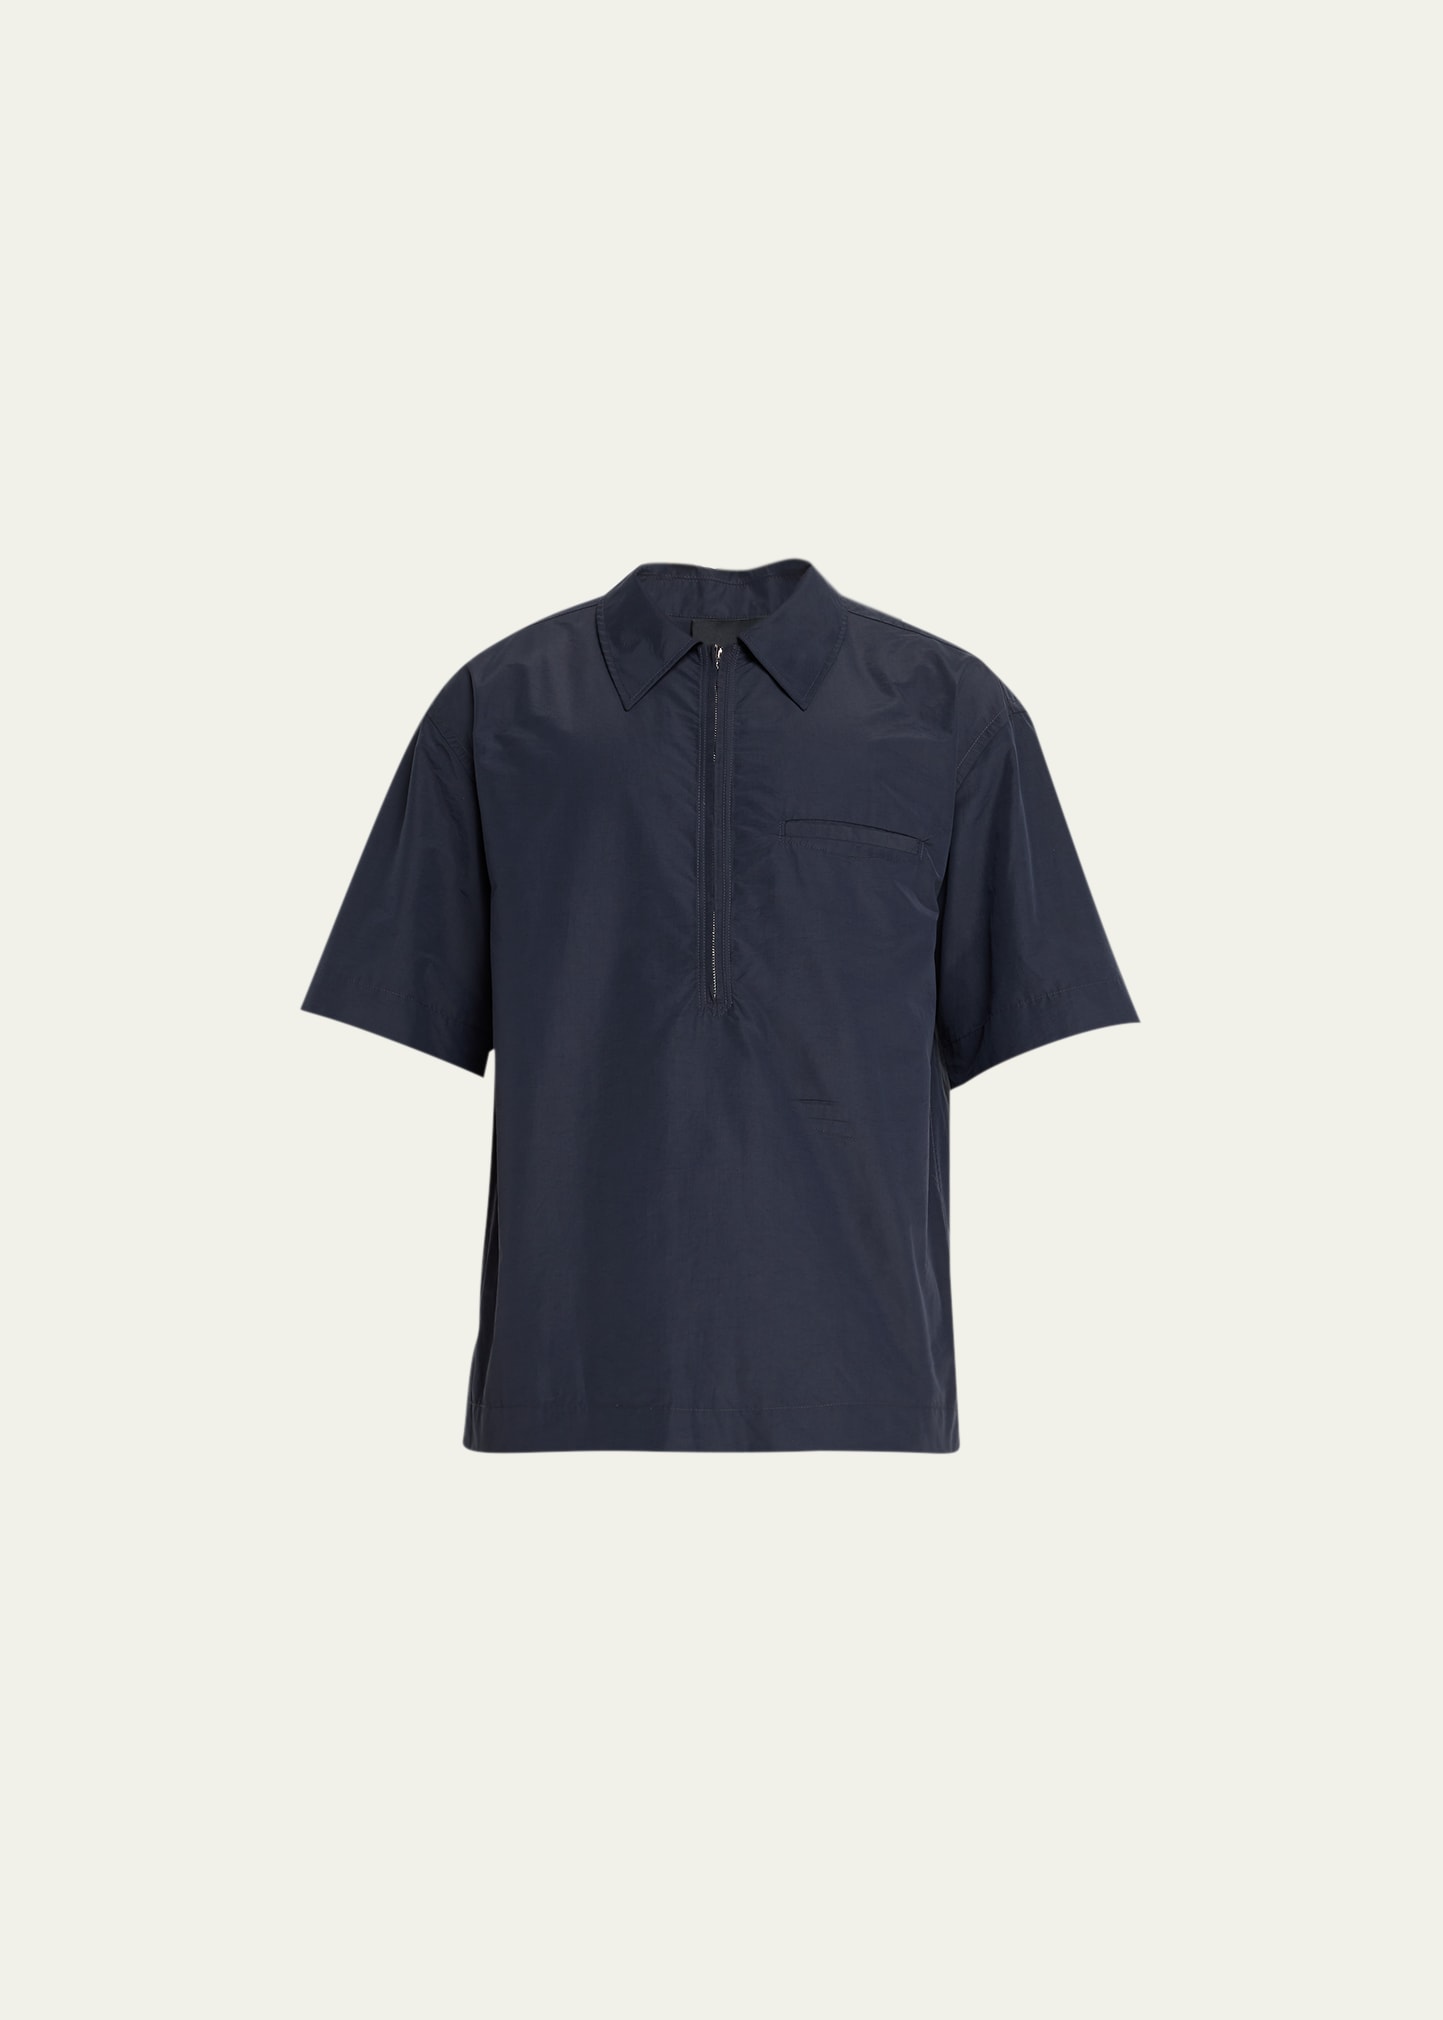 Men's Half-Zip Popover Shirt